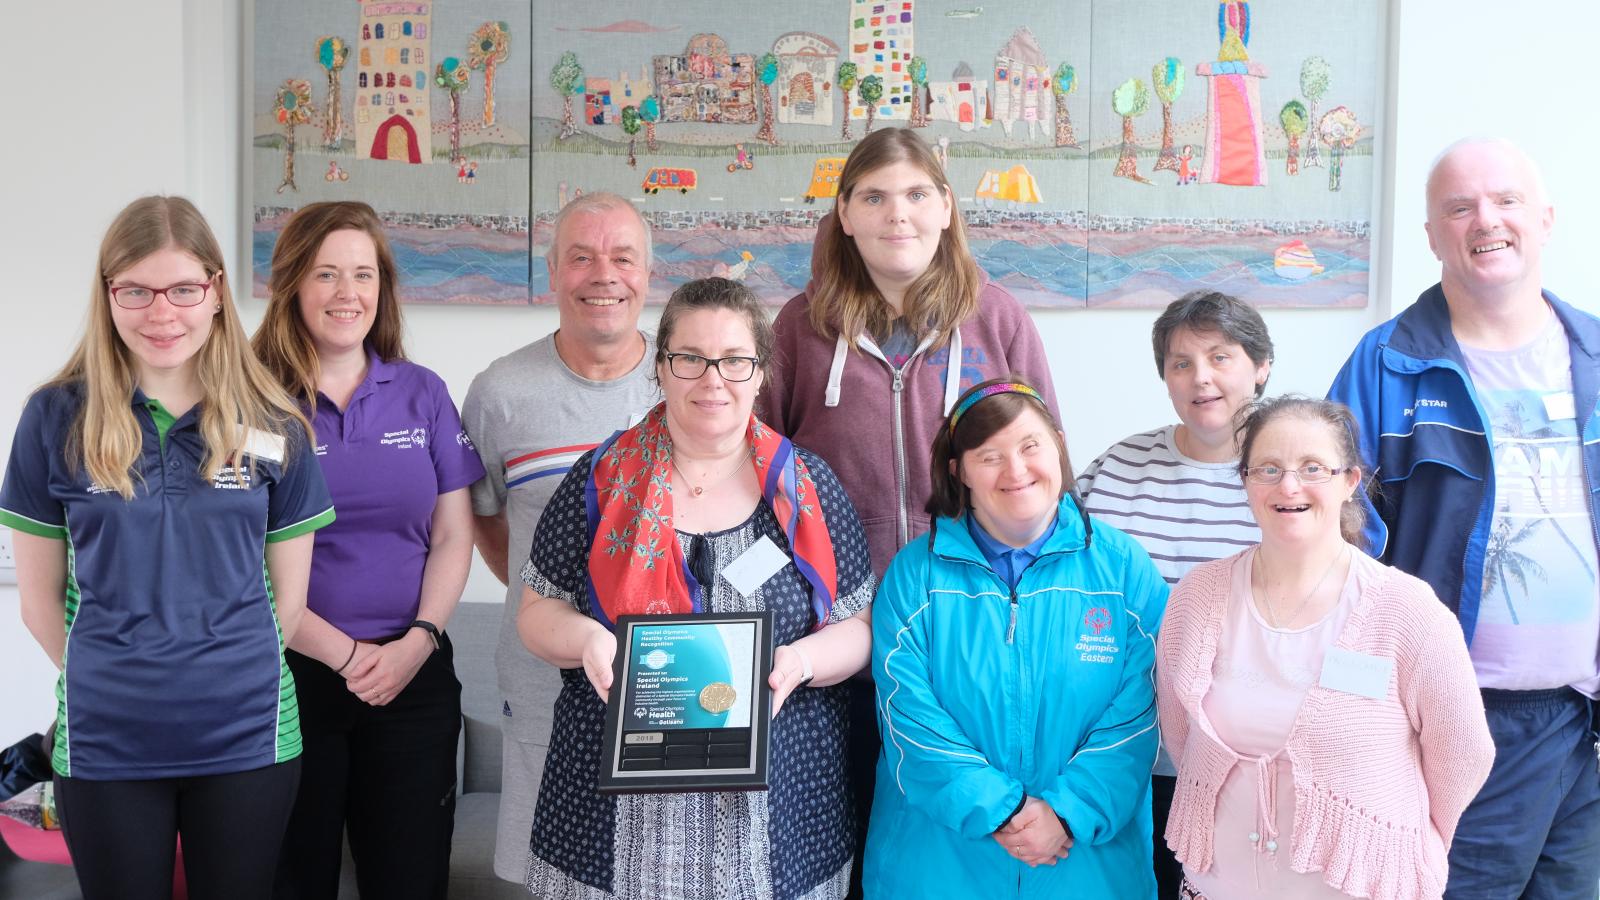 Special Olympics Ireland receives Healthy Community Award